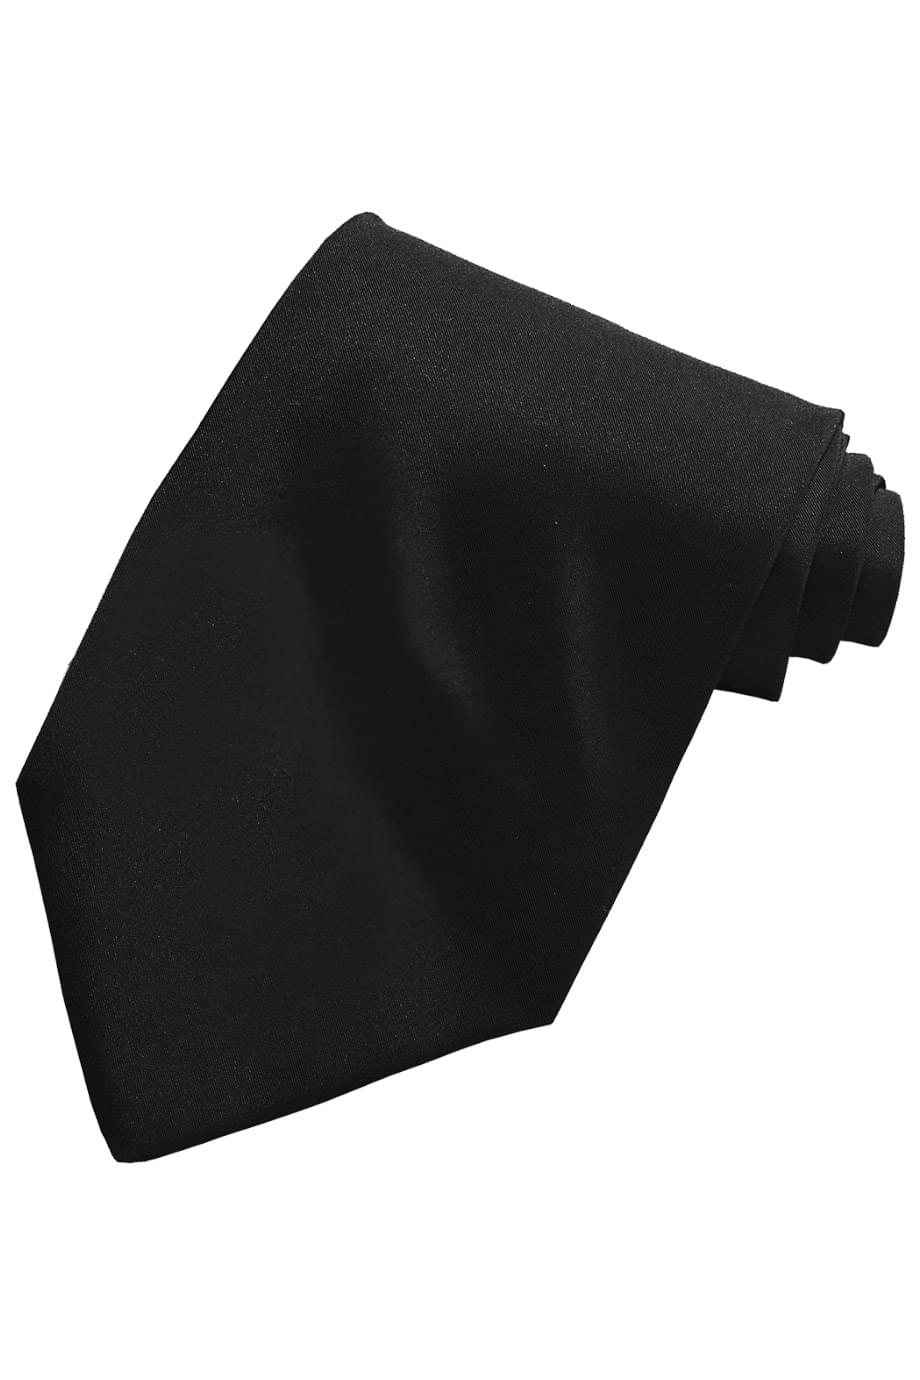 solid black tie, tie